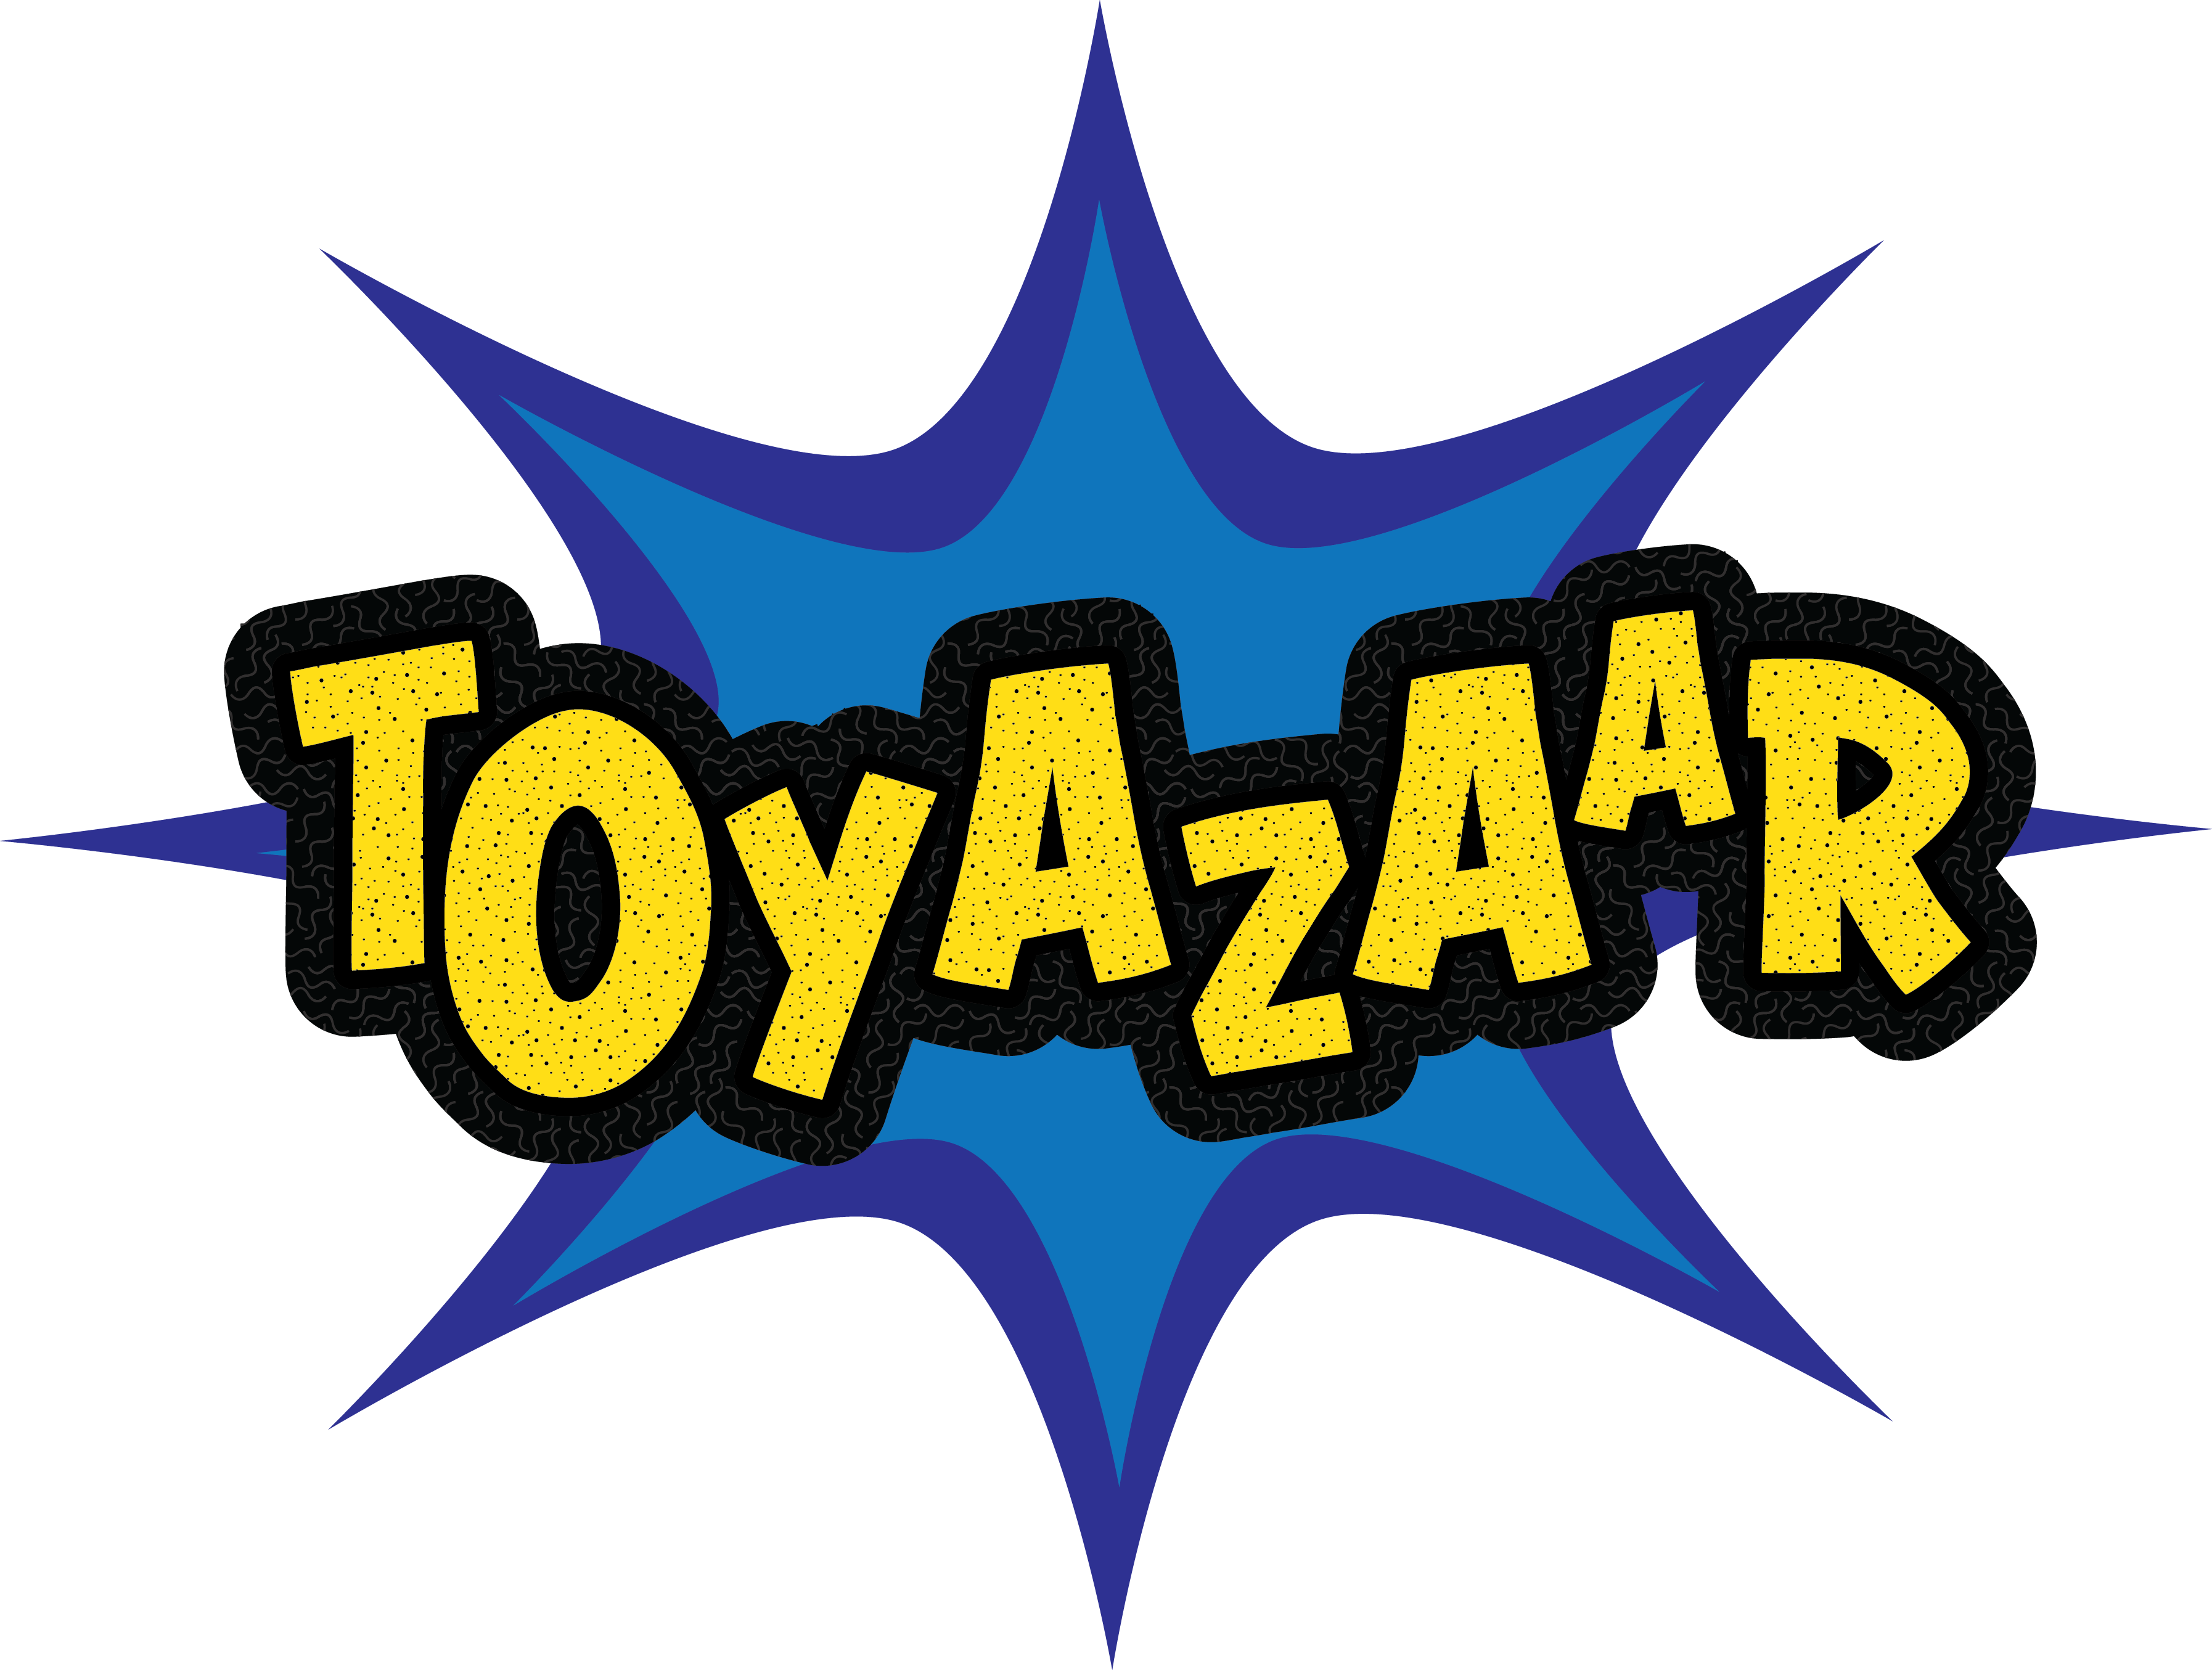 Toyazaar